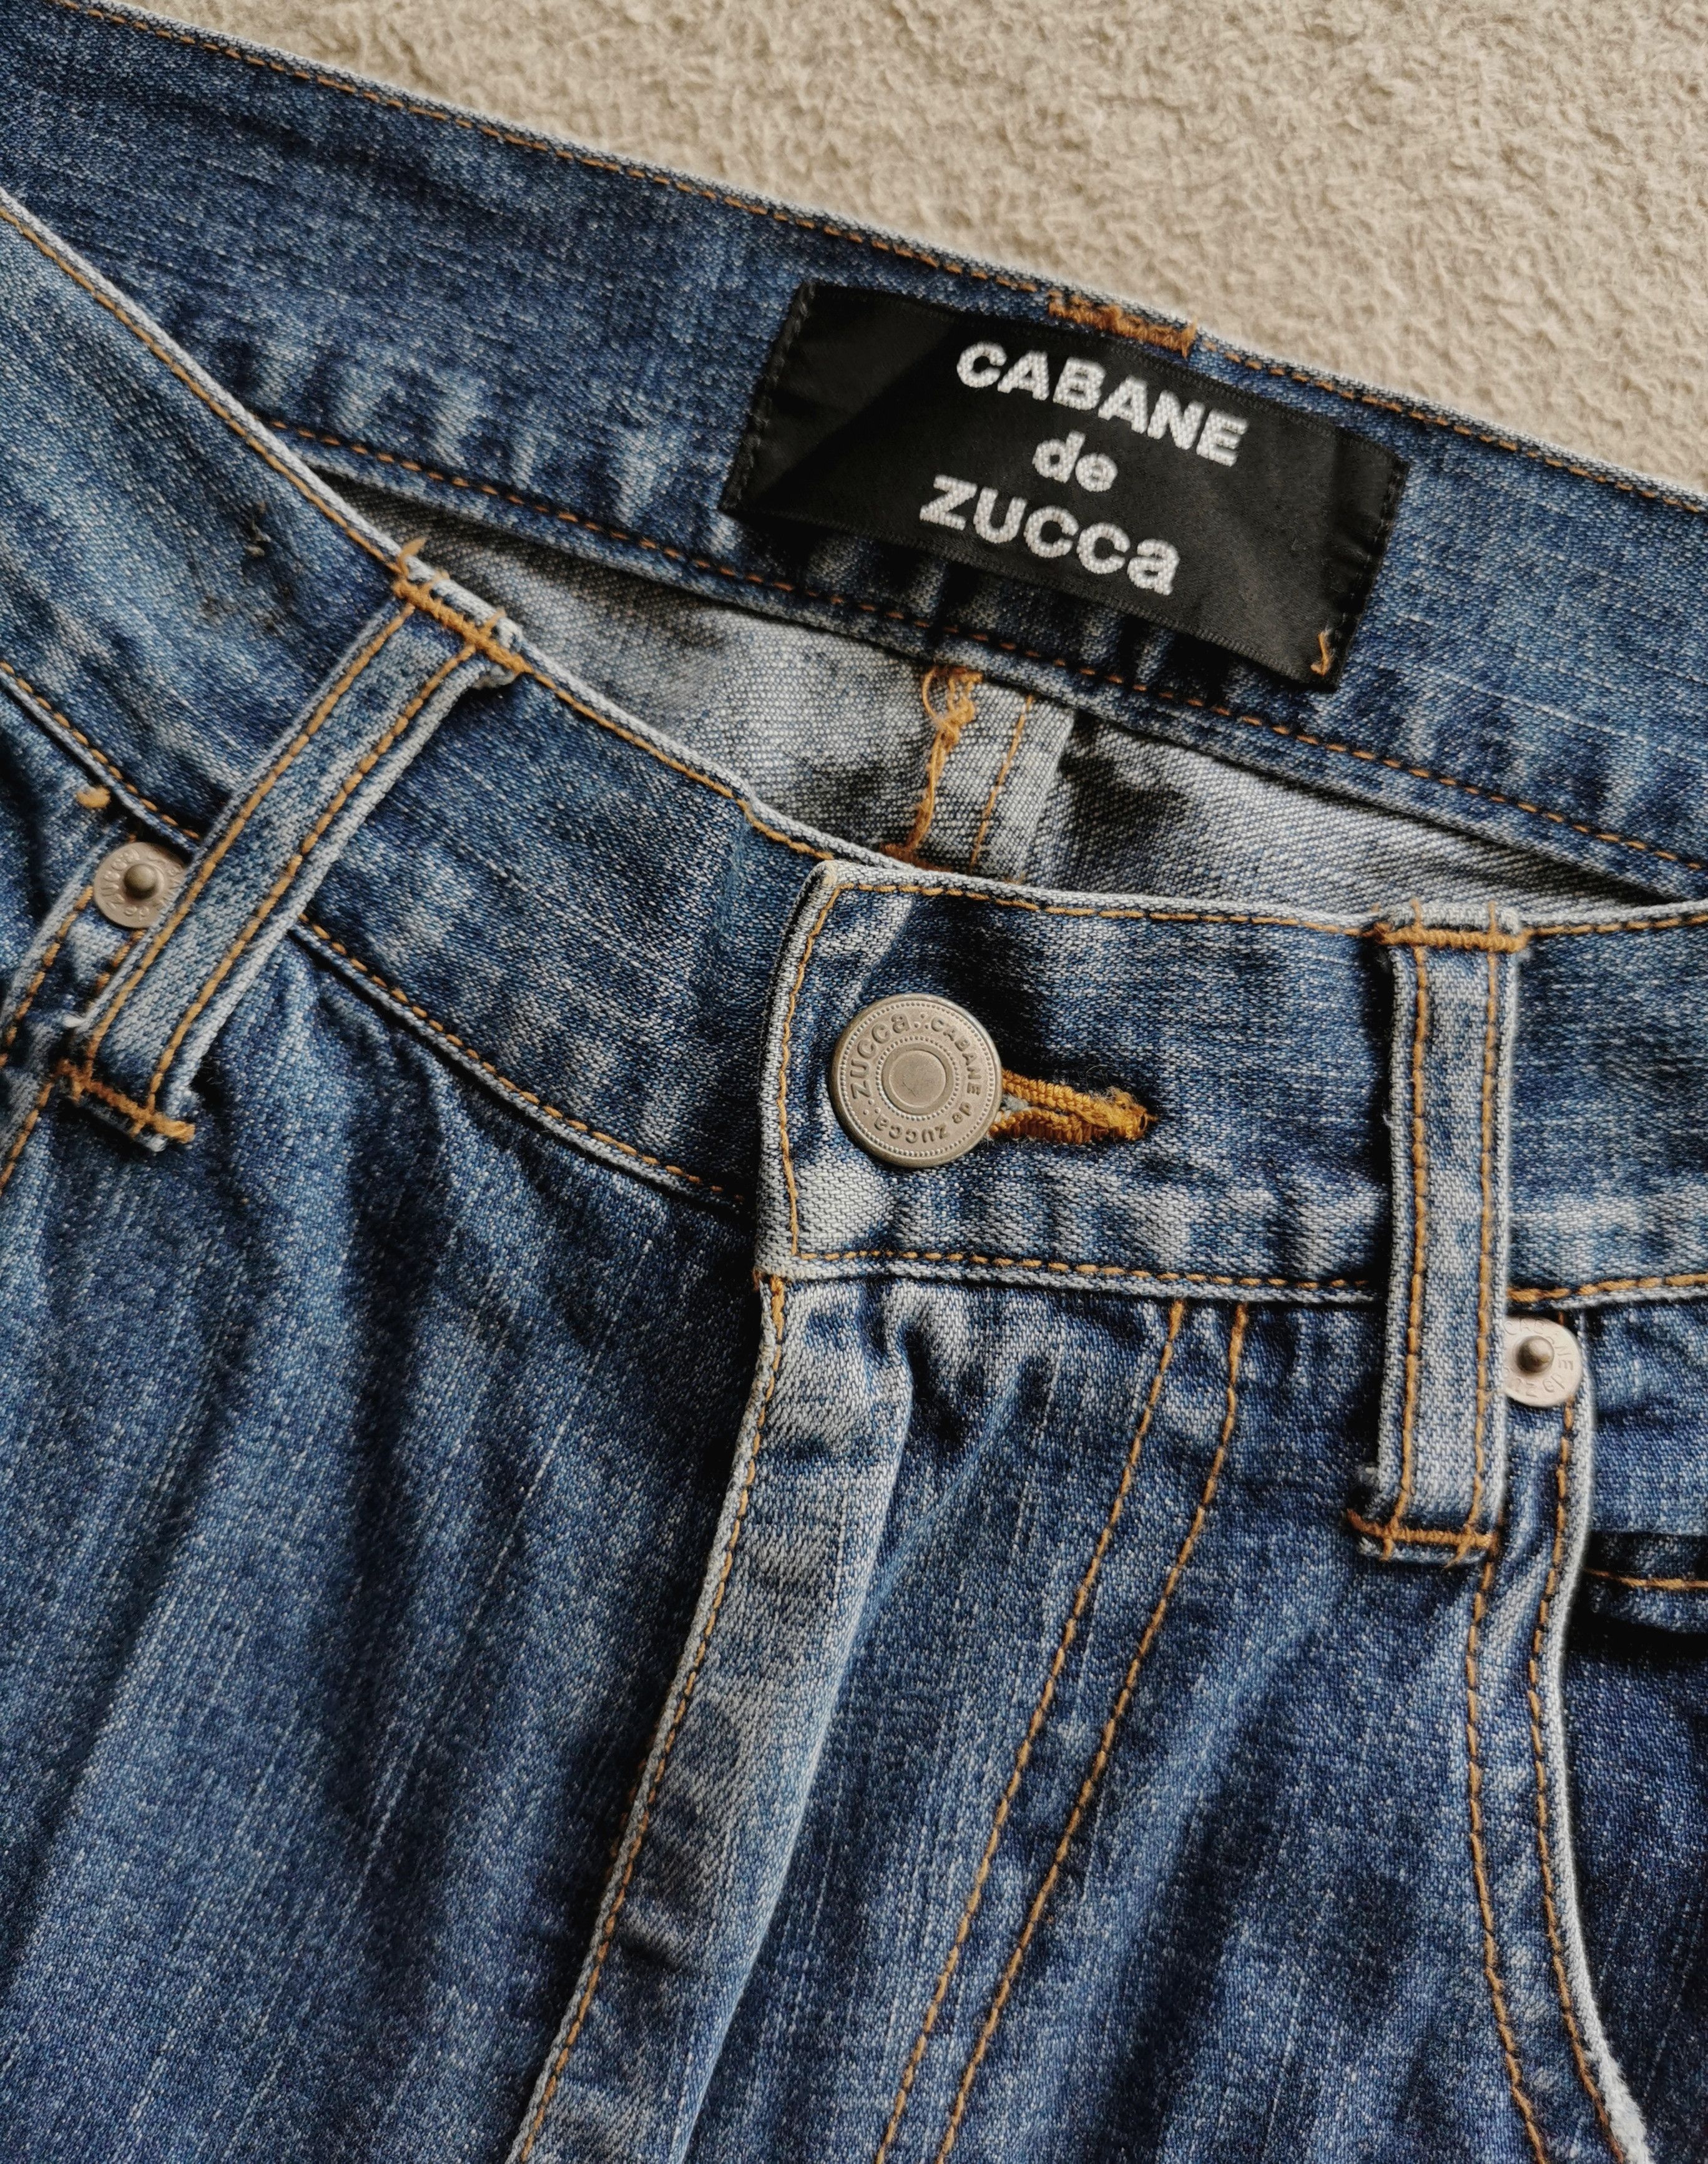 Cabane De Zucca Cabanne de Zucca Cargo Jeans Size US 31 - 7 Thumbnail